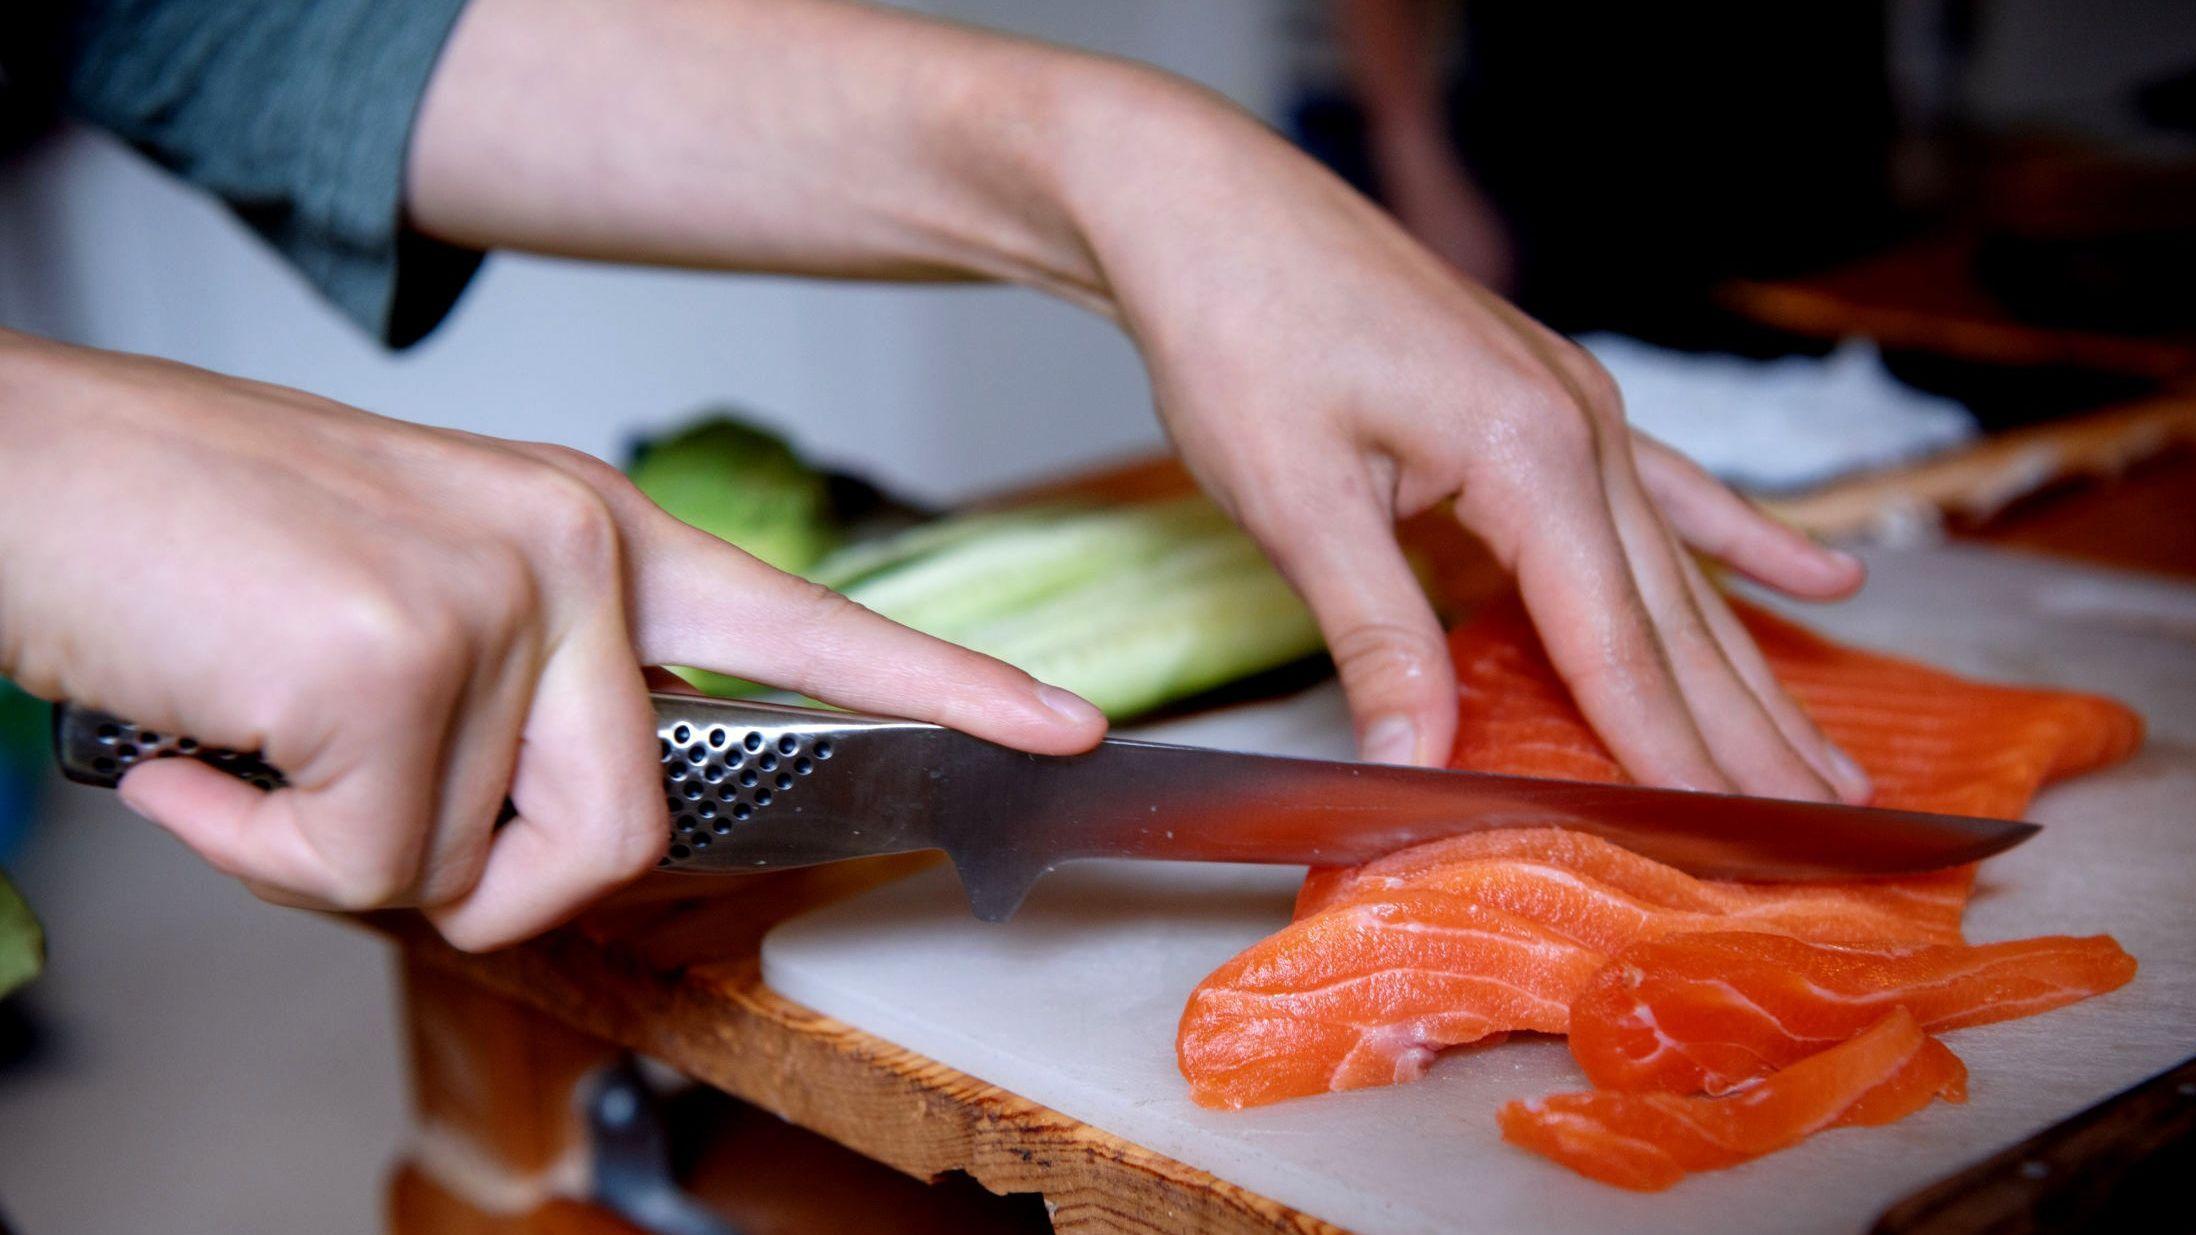 FERSK: Laks er blant de vanligste fisketypene i sushi. Kjøper du norsk oppdrettslaks trenger du ikke å fryse den før du spiser den rå. Foto: Line Møller/VG